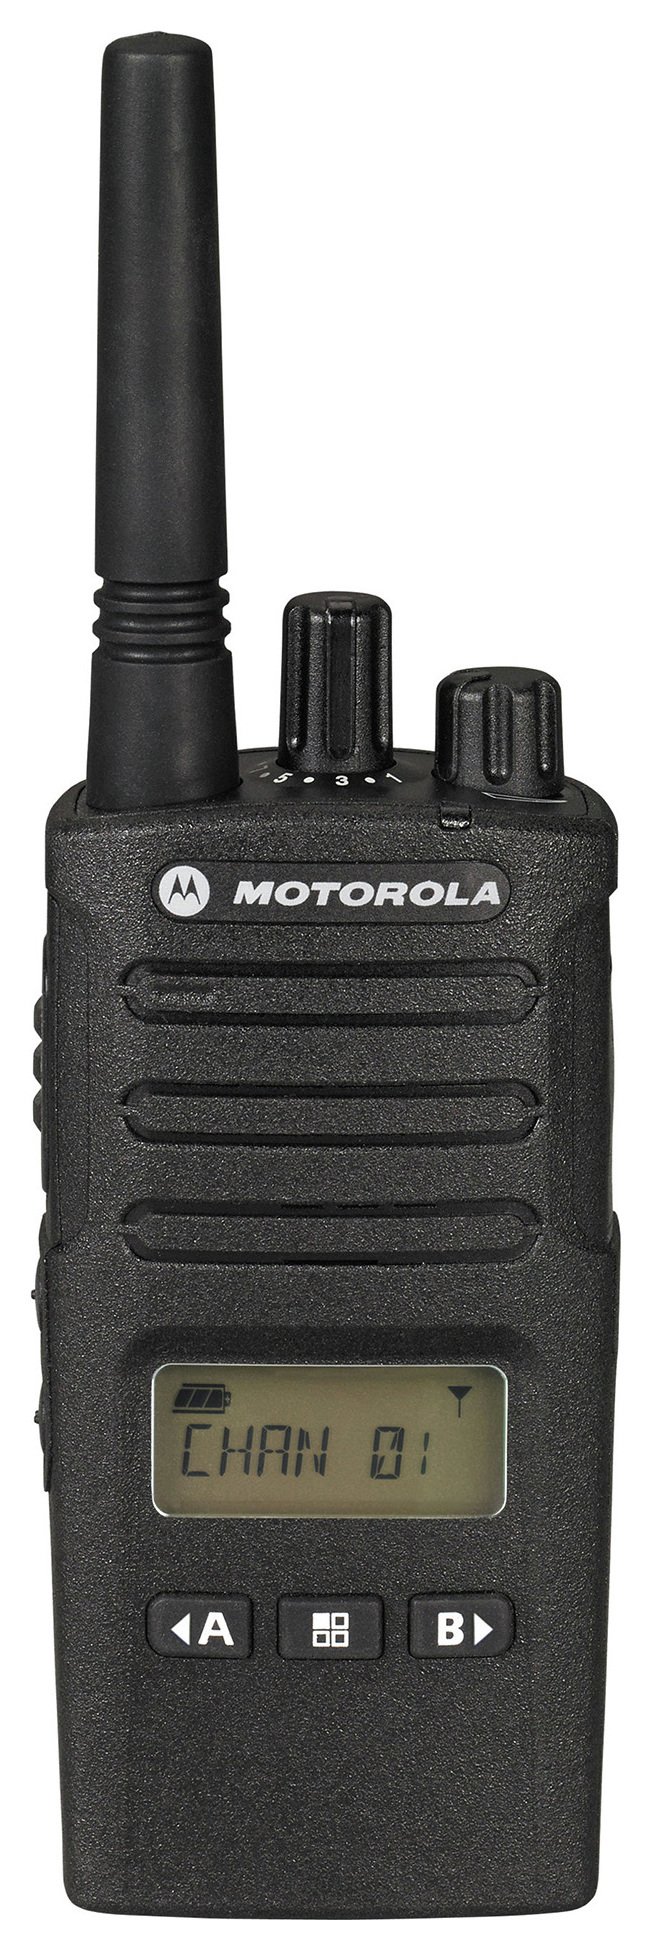 Motorola XT460 2 Way Radio - No Charger. Review